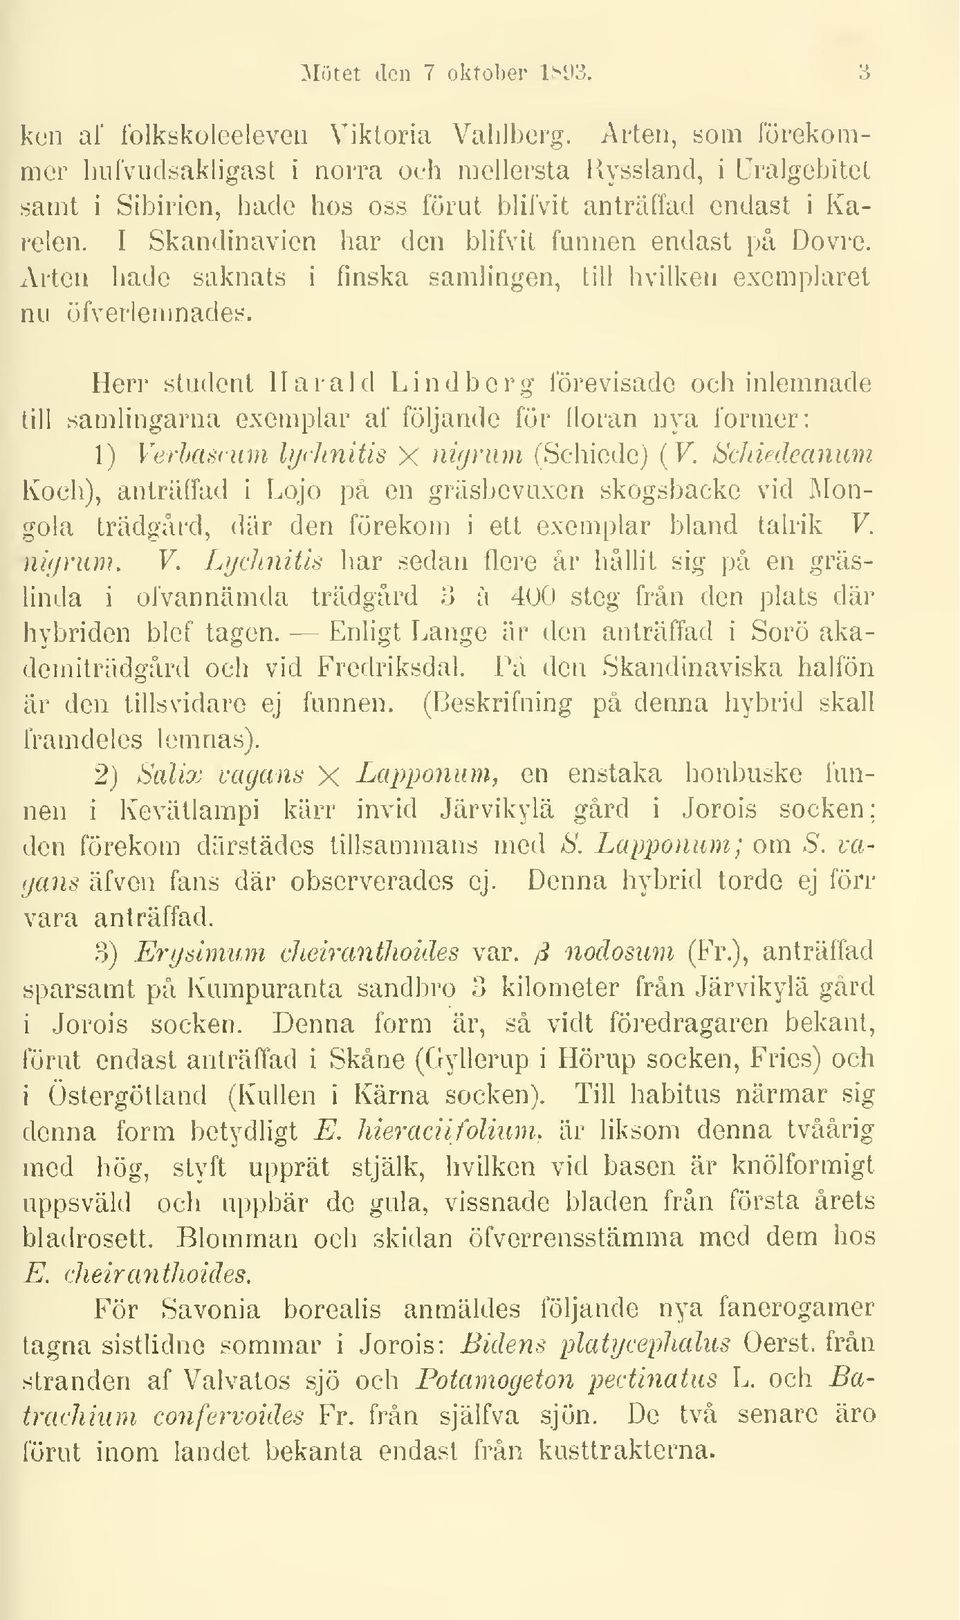 I Skandinavien har den blifvit funnen endast på Dovre. Arten hade saknats i finska samlingen, till hvilken exemplaret nu öfverlenmades.